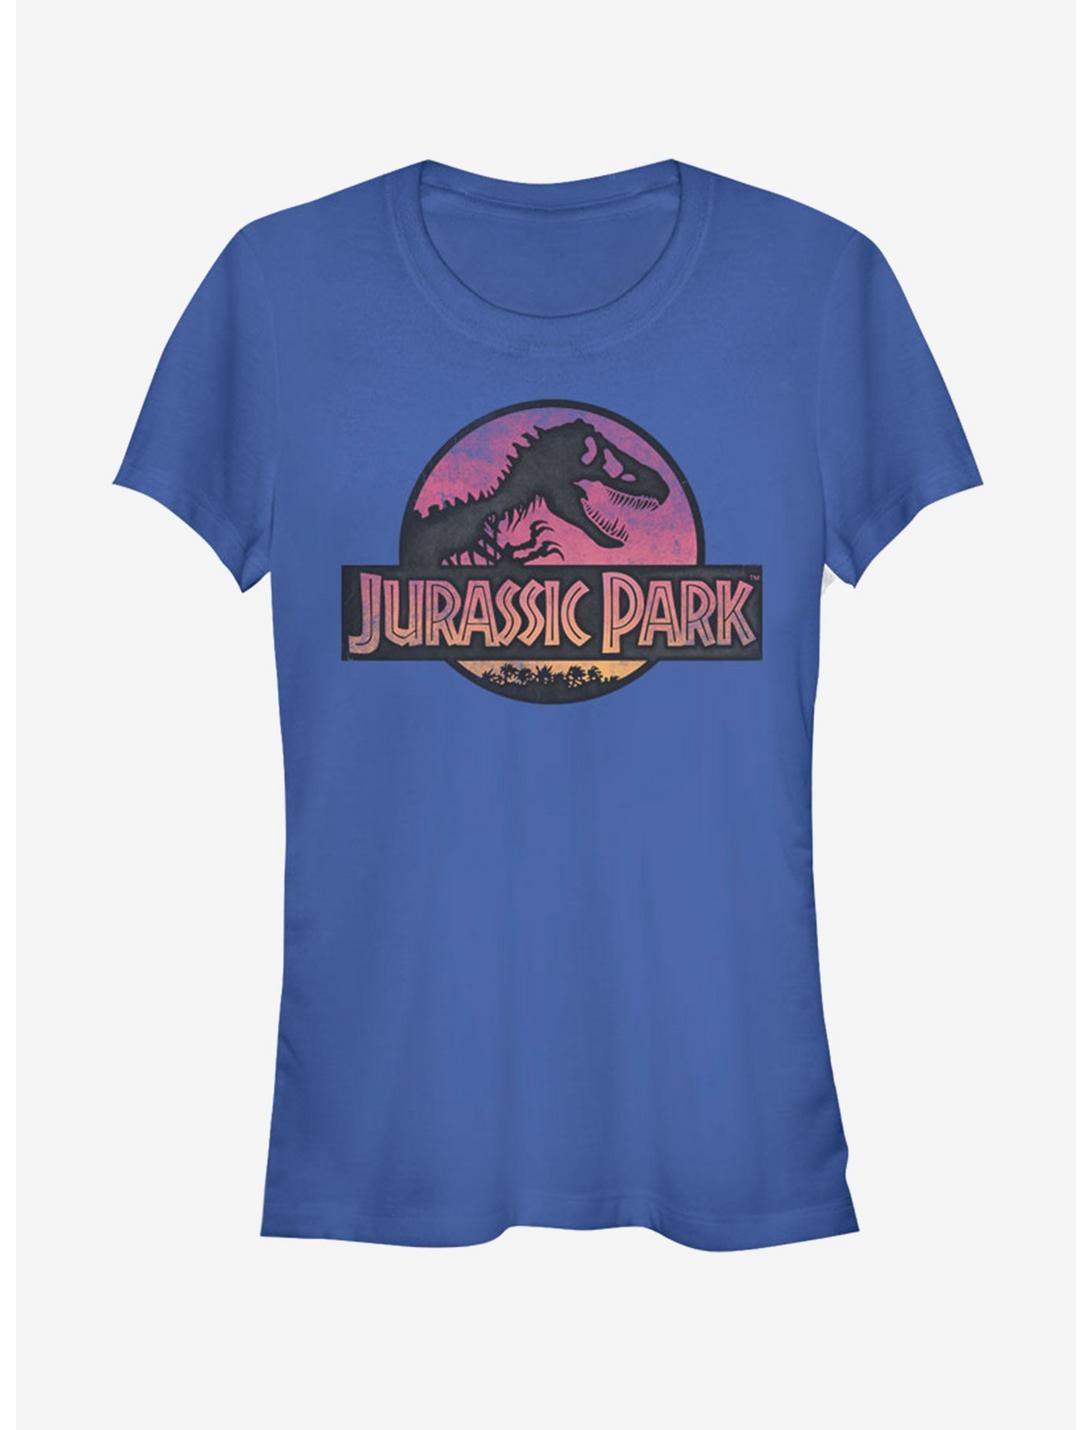 Jurassic Park Safari Logo Royal Blue Girls T-Shirt, ROYAL, hi-res